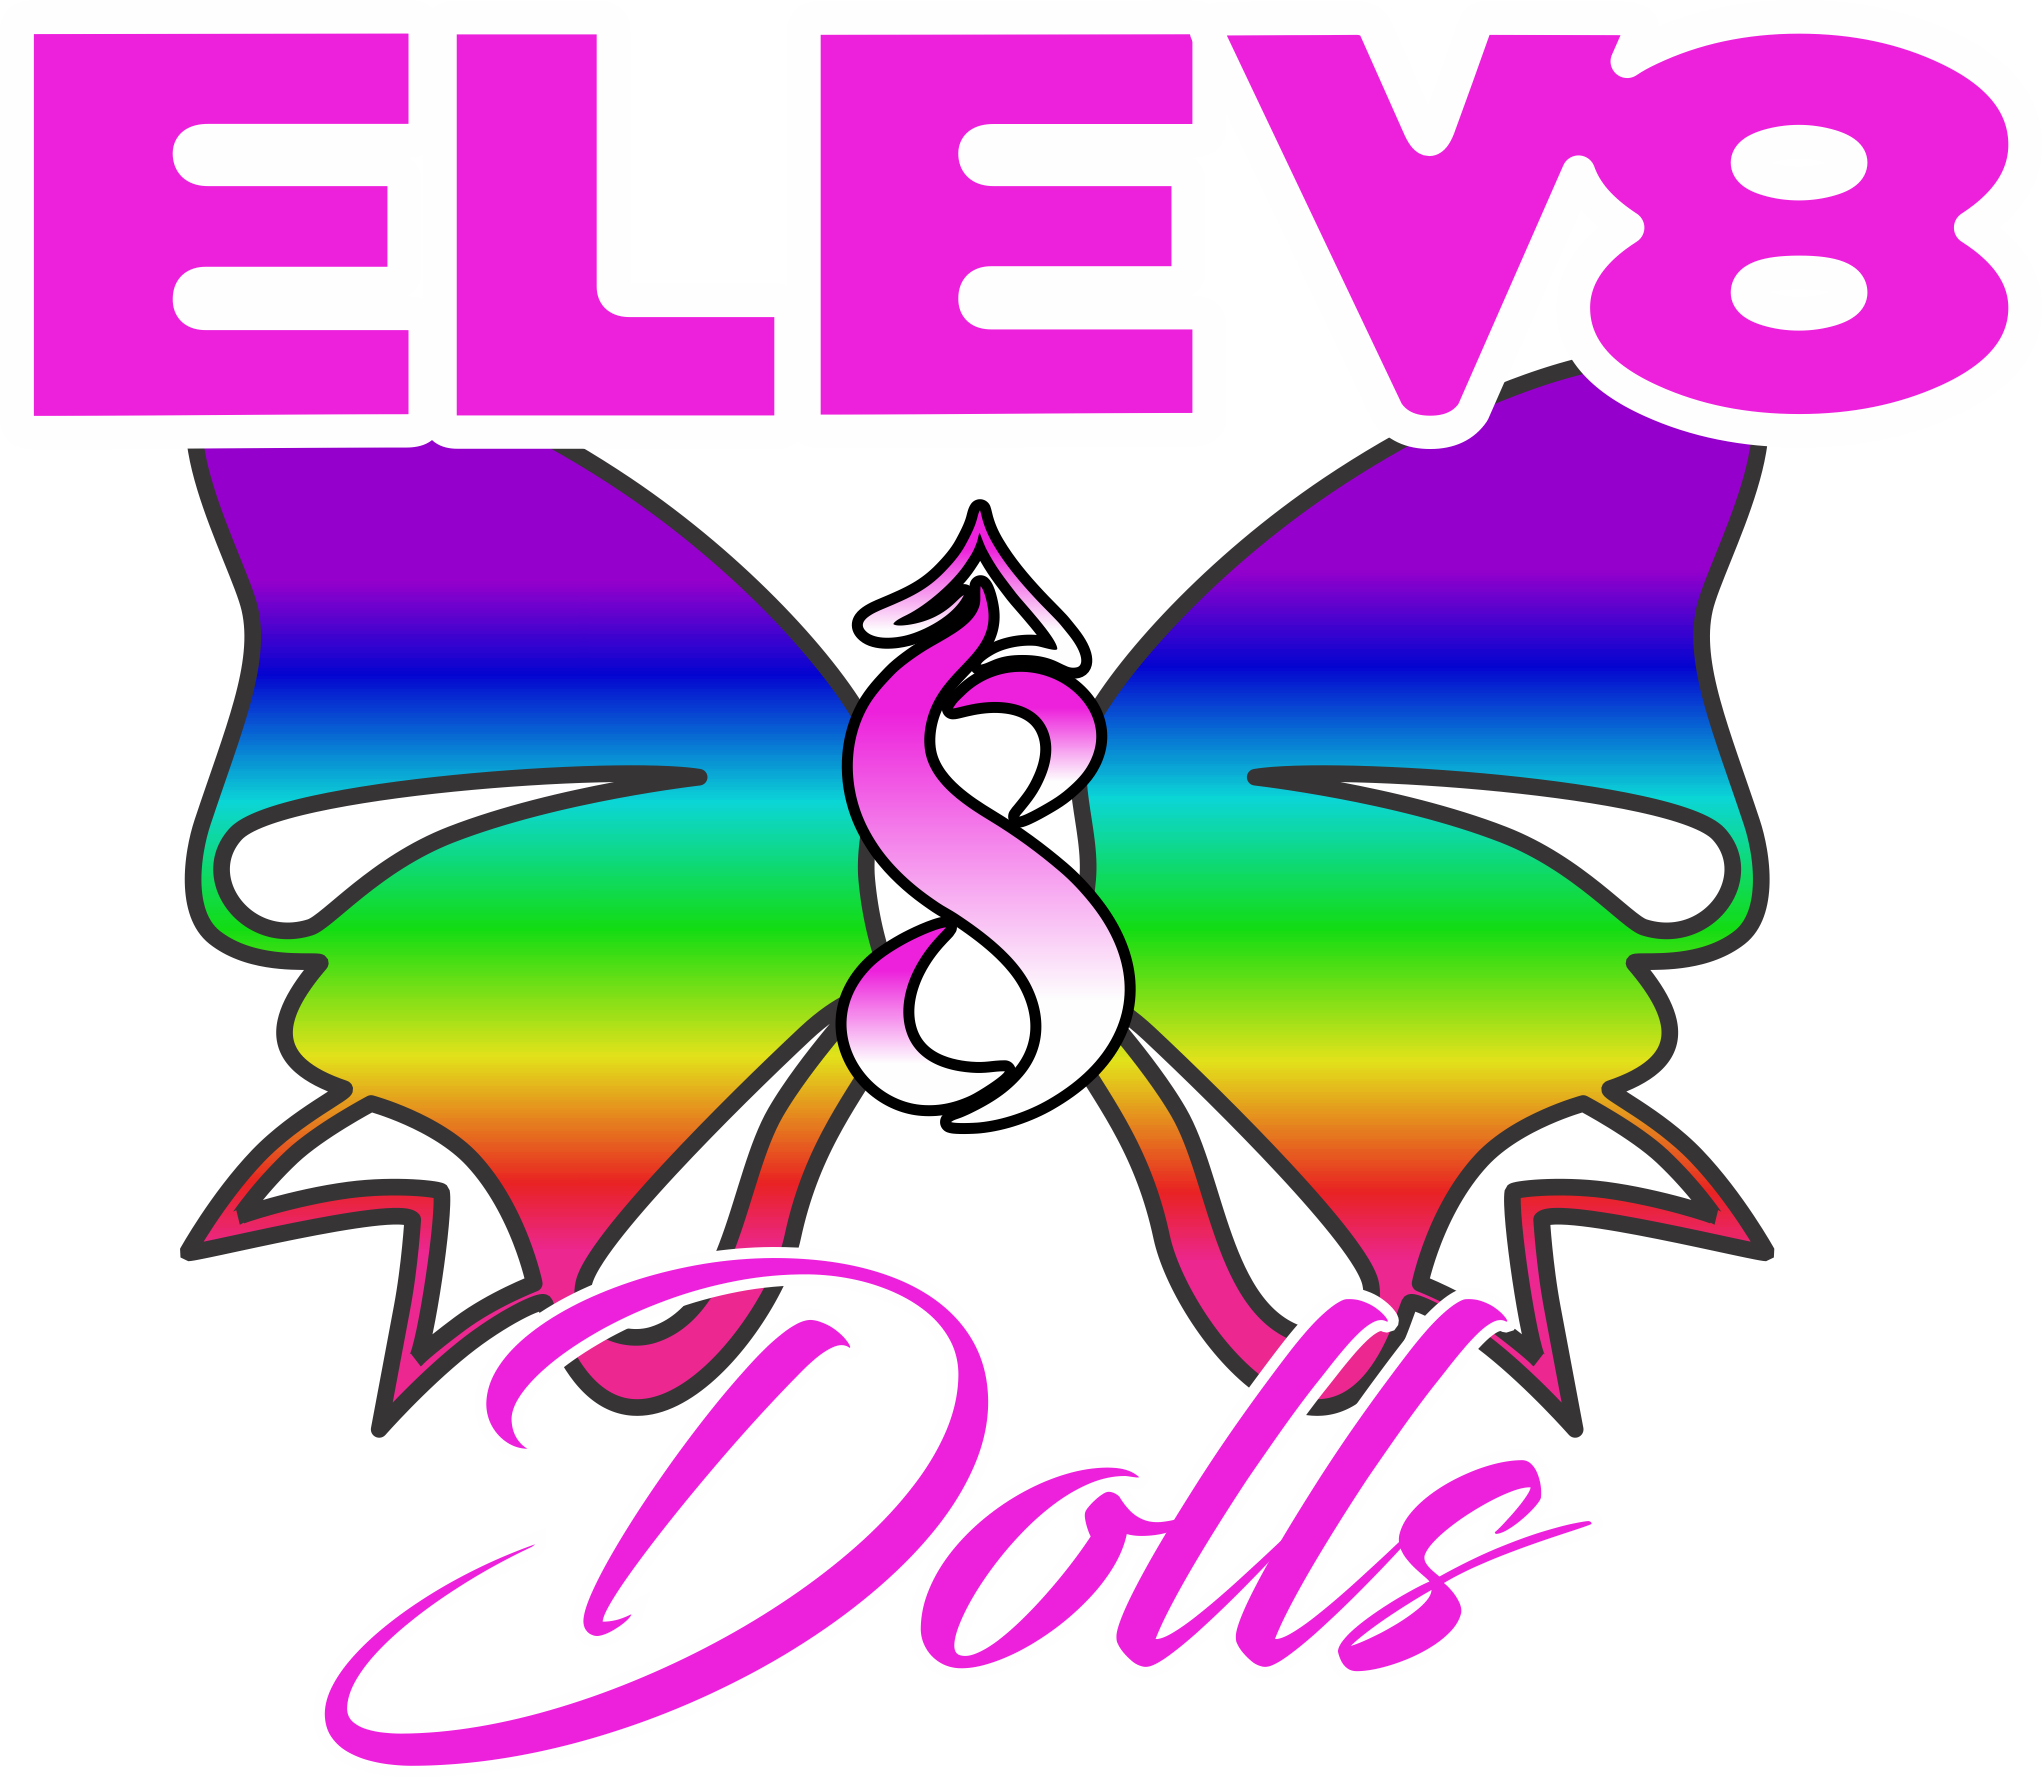 Elev8 Dolls here to Elev8! Elev8 Presents